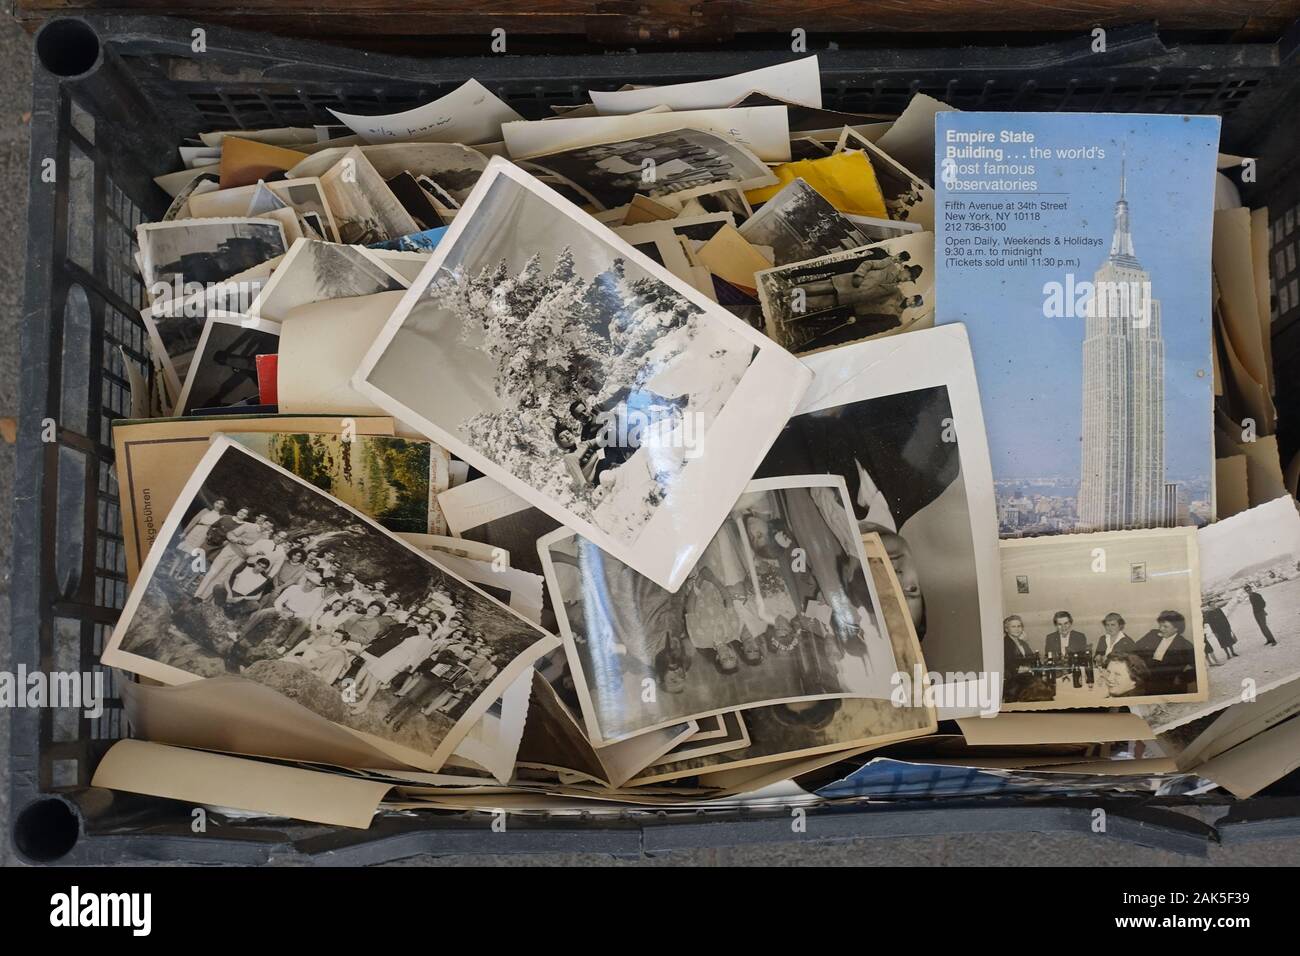 Athen, Griechenland - August 7, 2019: Kiste mit antik schwarz-weiß Fotografien und vintage Empire State Building Packungsbeilage. Stockfoto